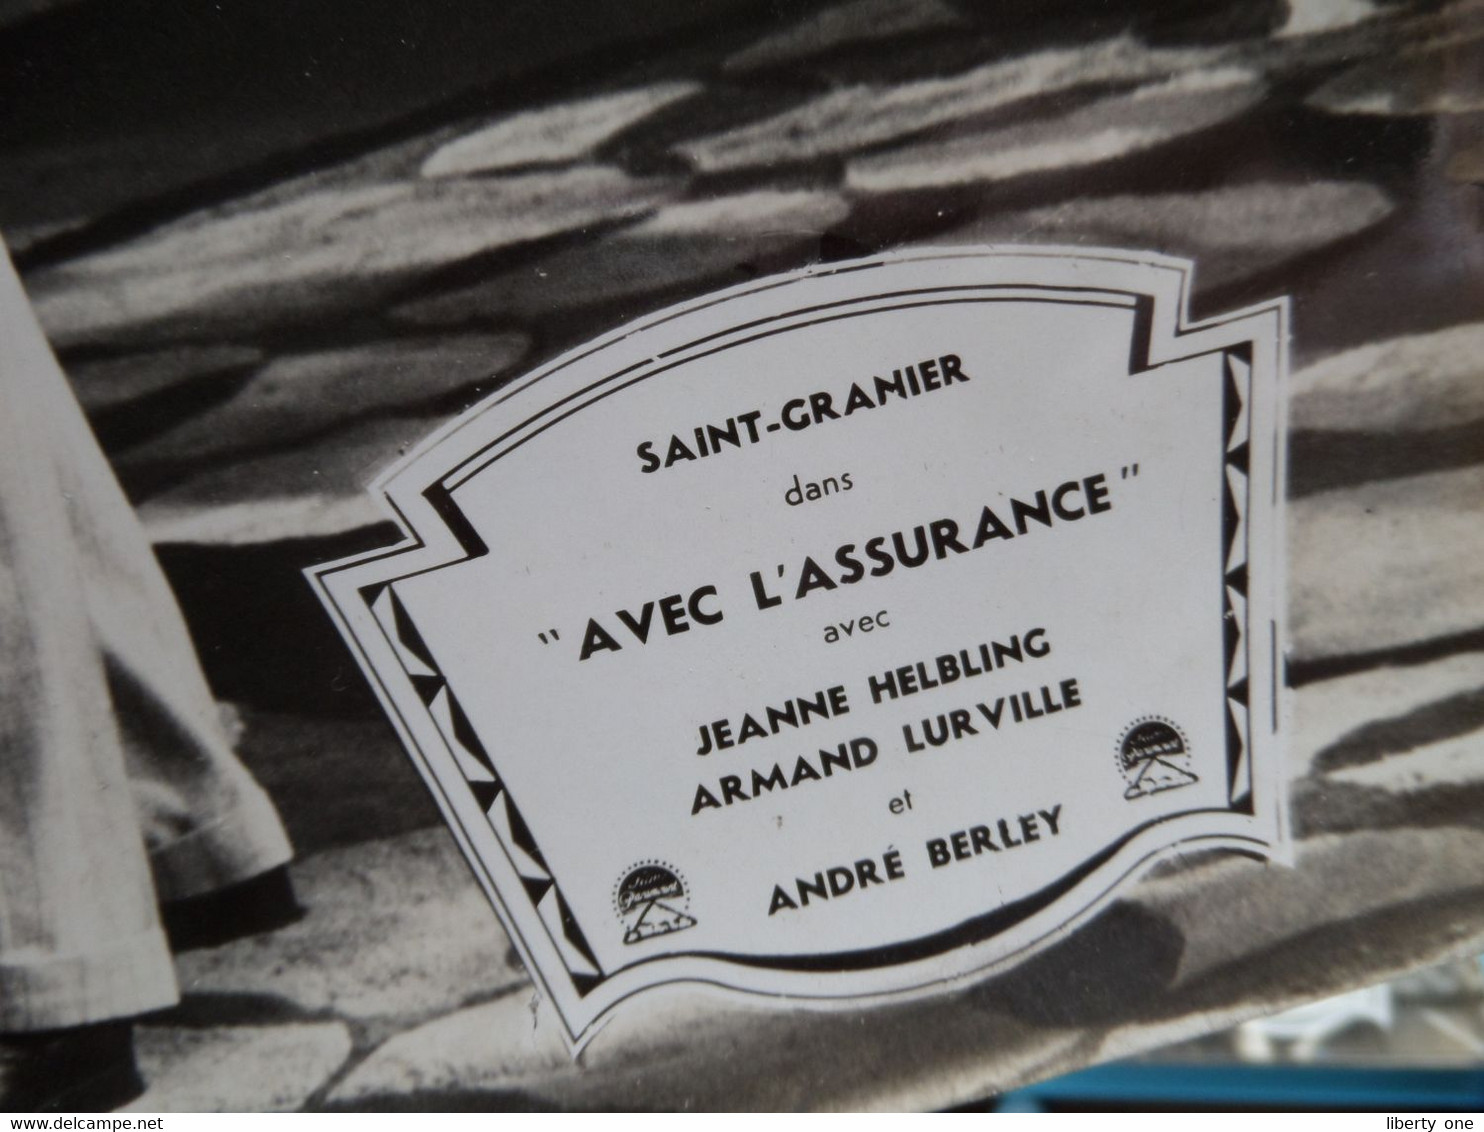 Saint-Granier Dans " AVEC L'ASSURANCE " Jeanne Helbling, Armand Lurville Et André Berley ( Photo Size 30 X 45 Cm.)! - Fotos